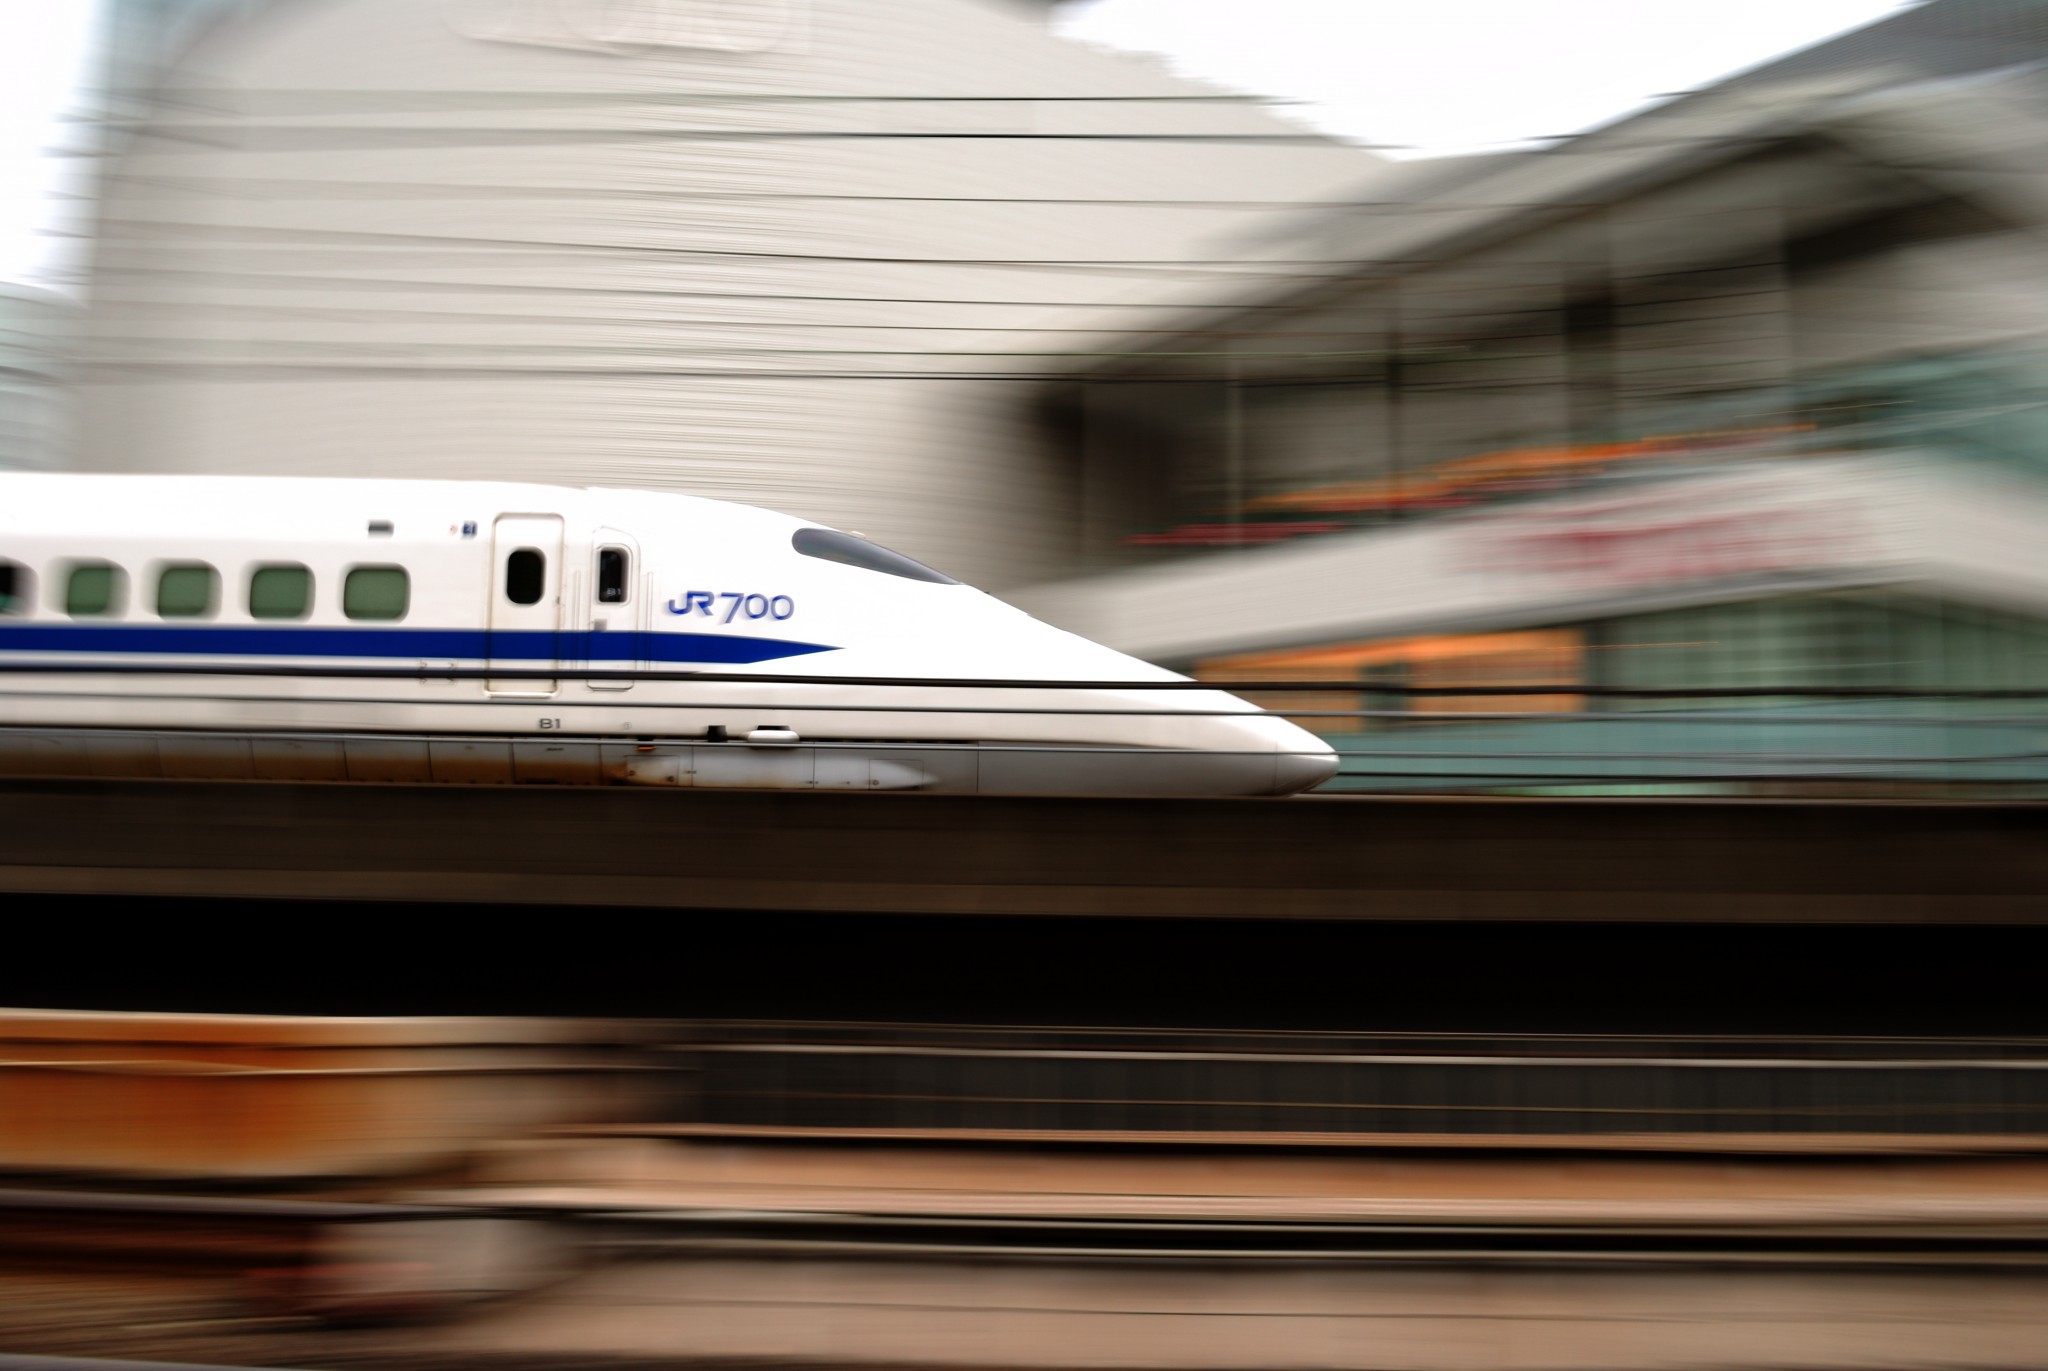 Shinkansen4